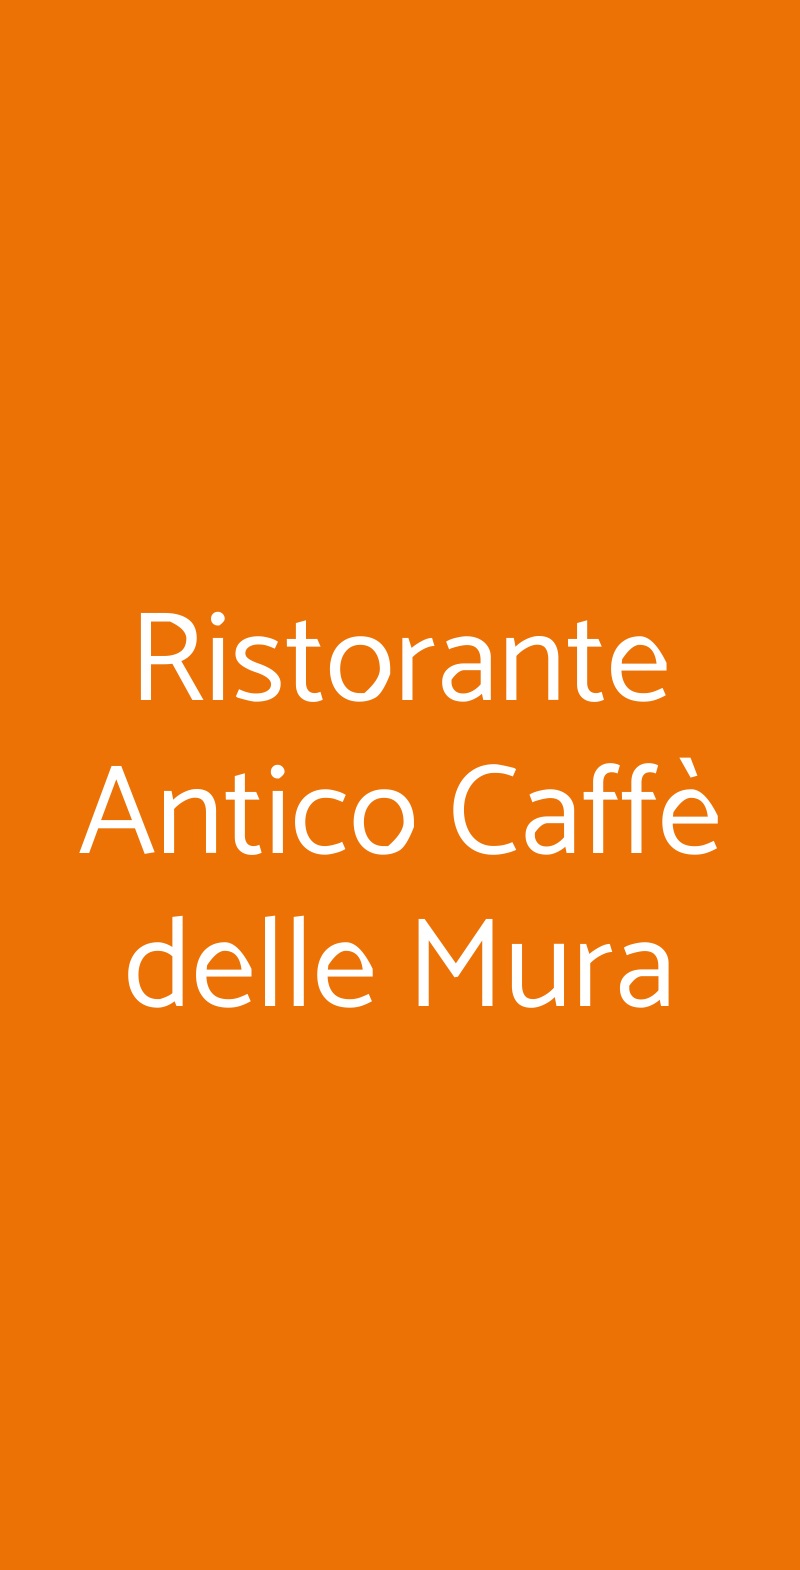 Ristorante Antico Caffè delle Mura Lucca menù 1 pagina